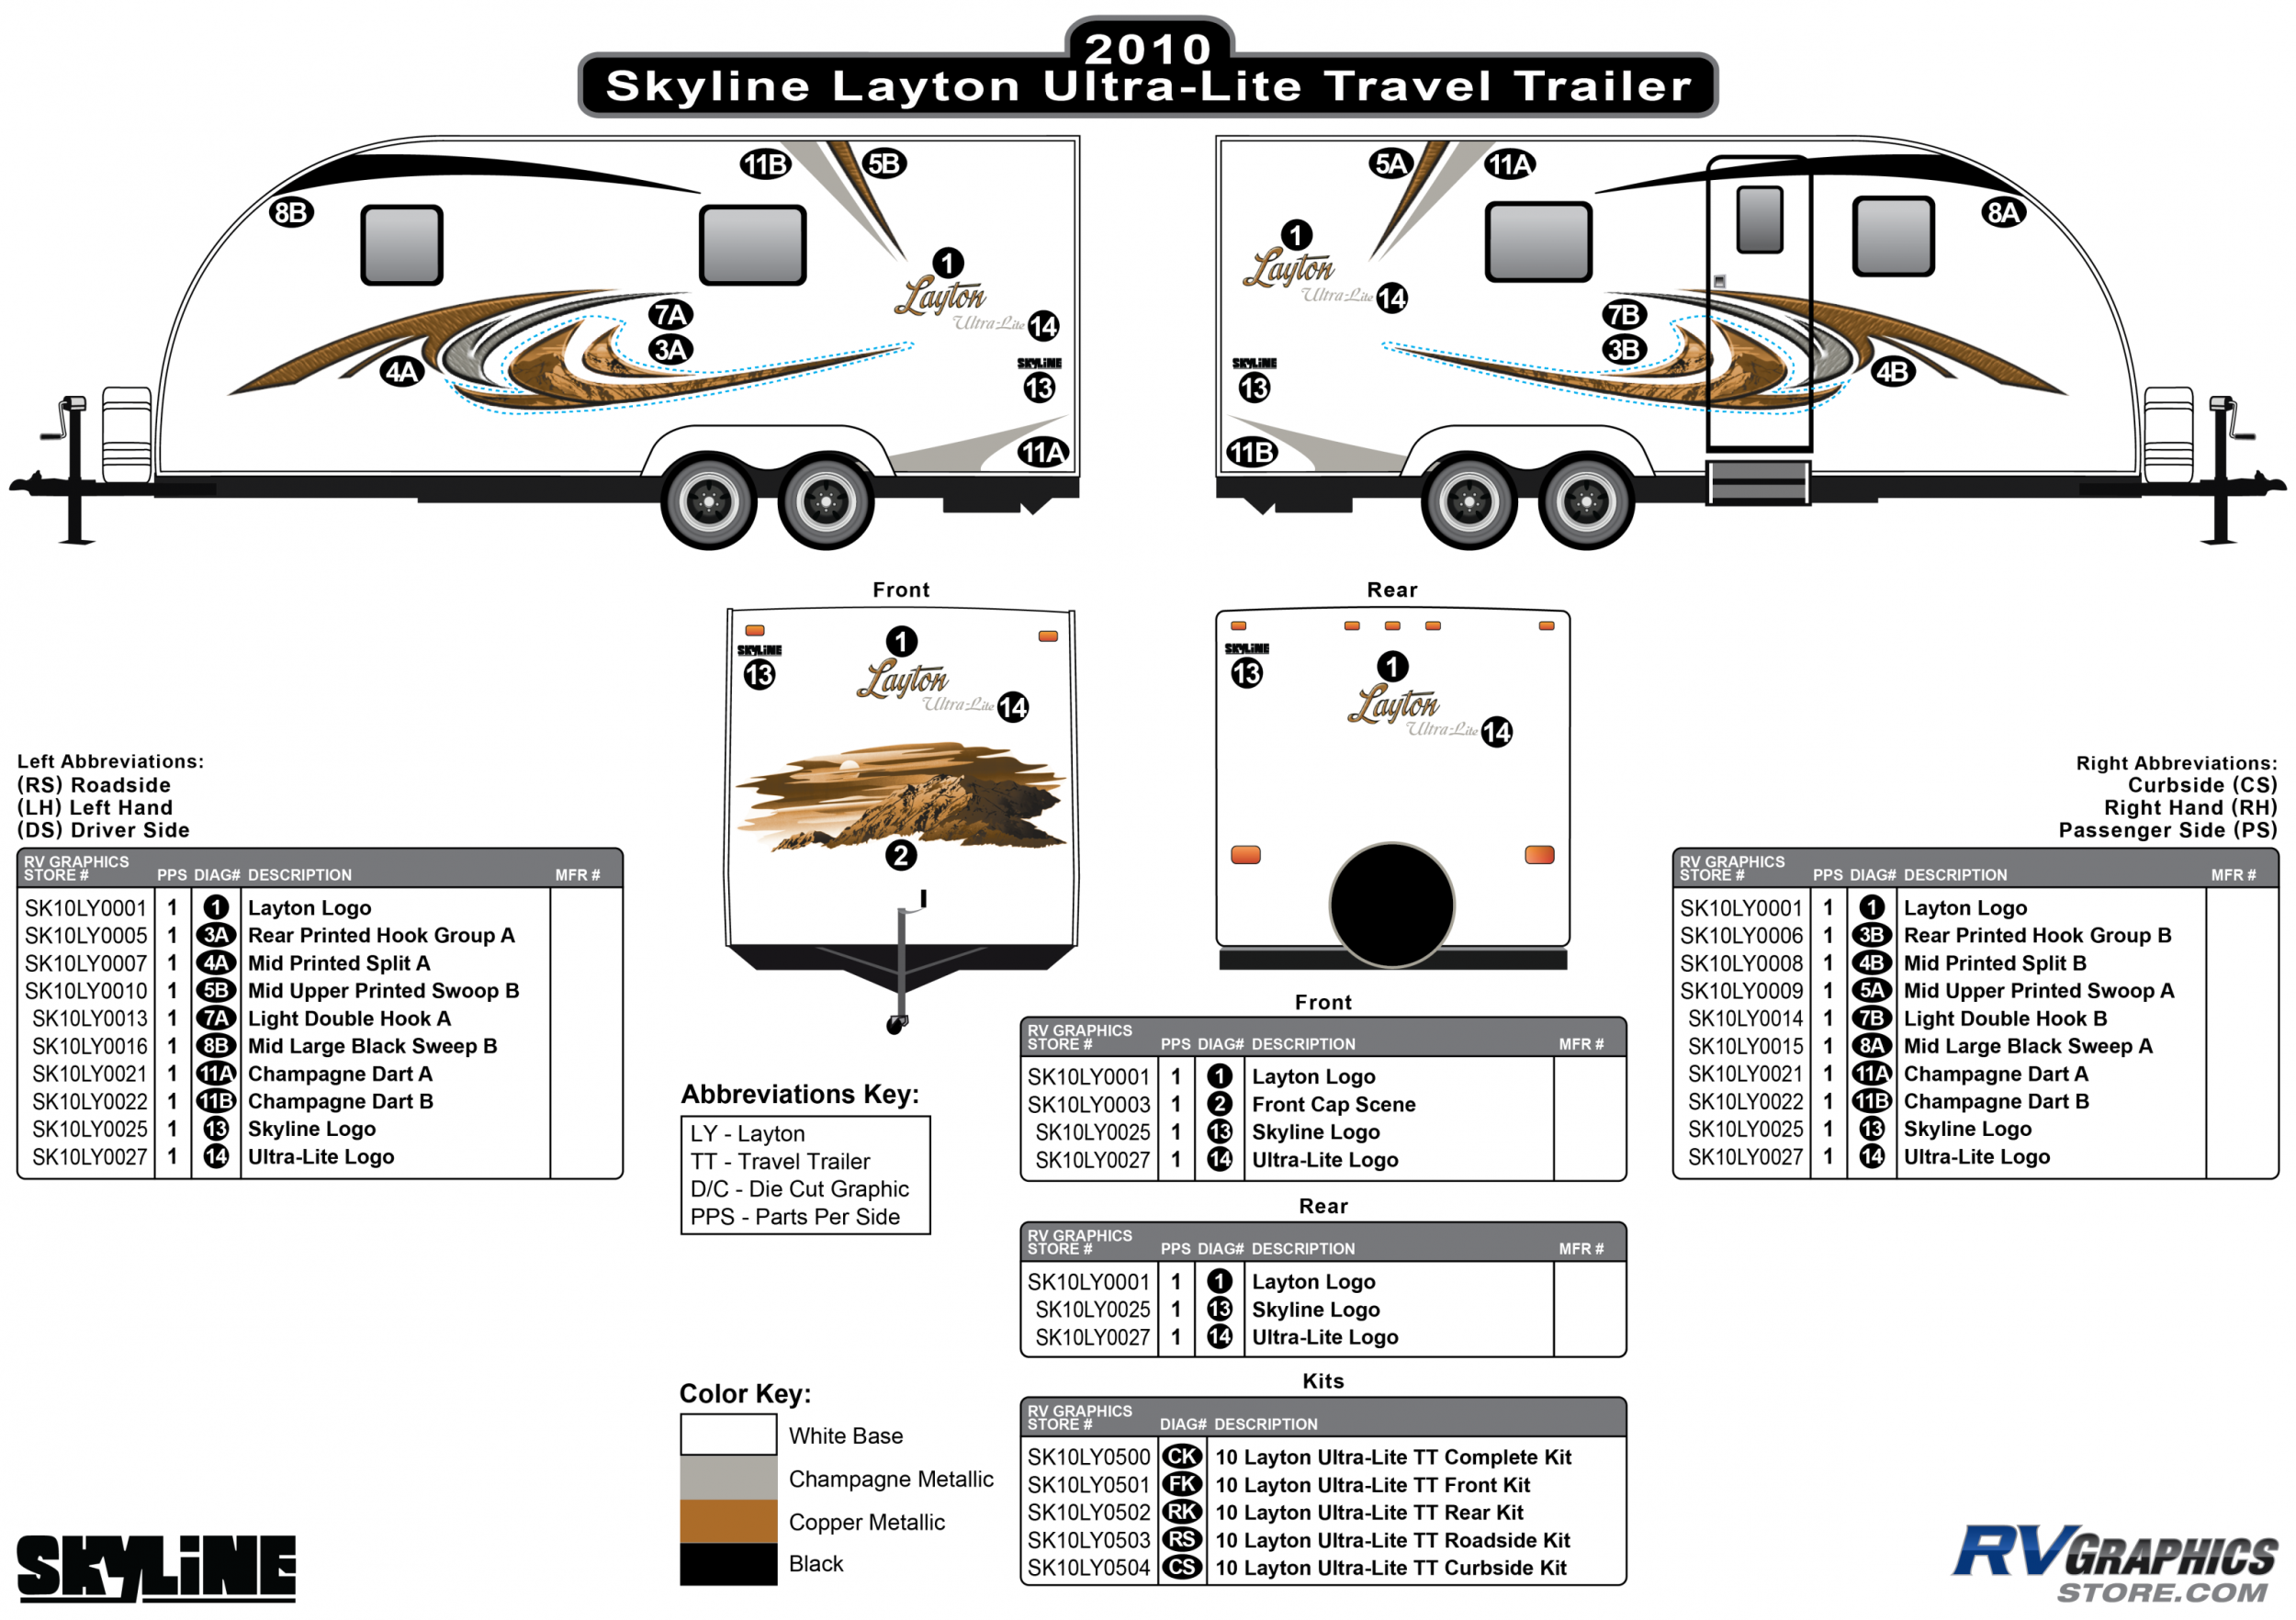 layton travel trailer manufacturer